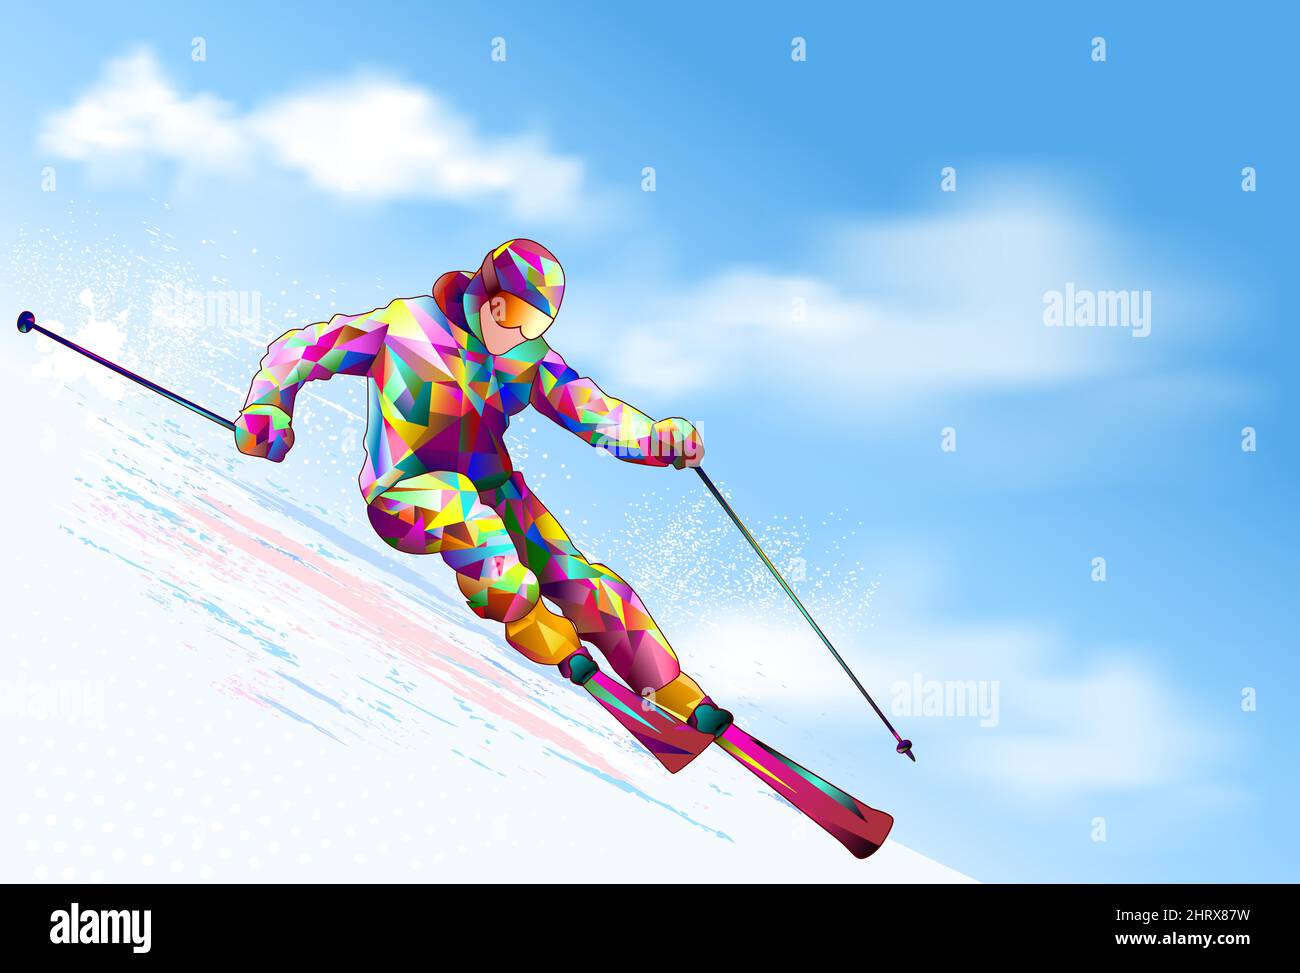 Skieur sur une pente enneigée. Le skieur descend sur des skis contre le fond du ciel et des nuages. Illustration de Vecteur